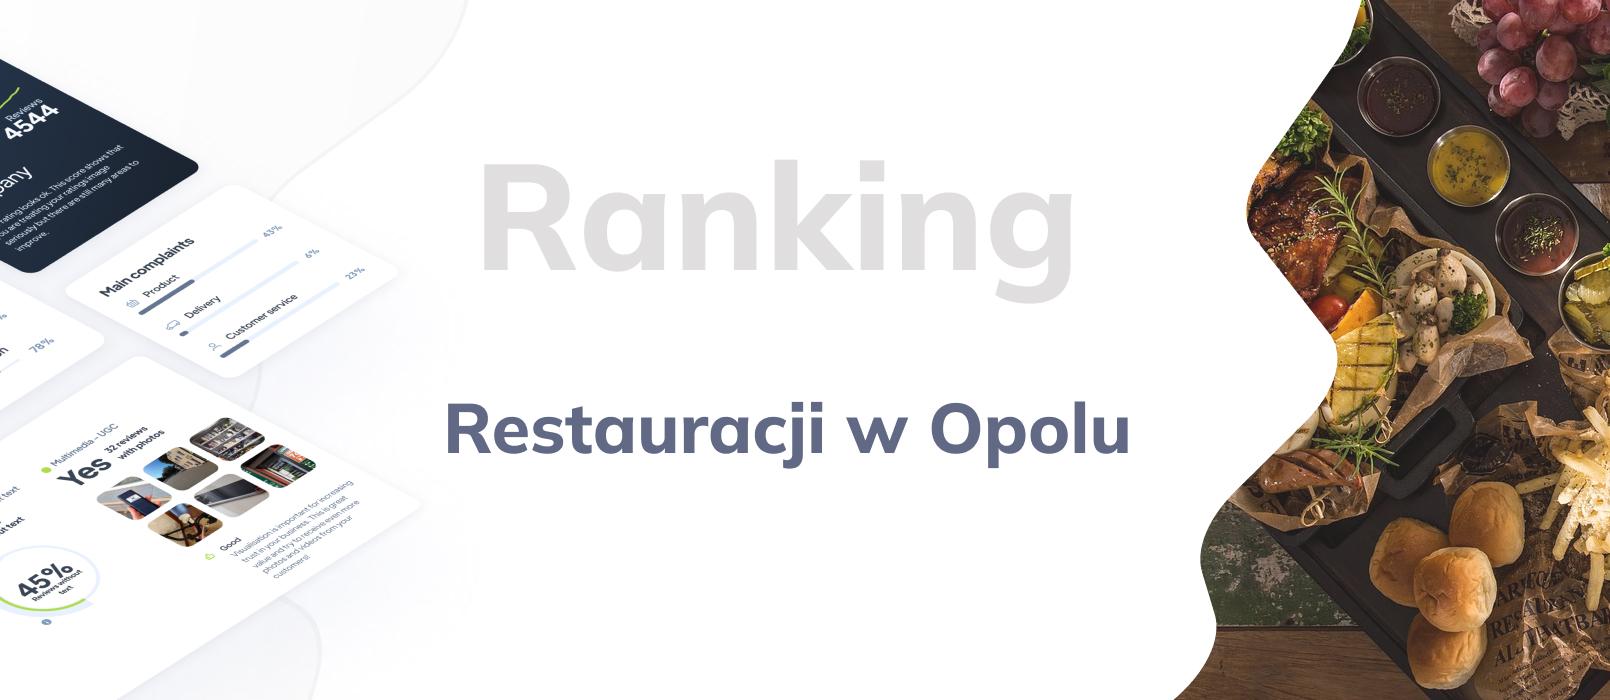 Restauracje w Opolu - ranking TOP 10